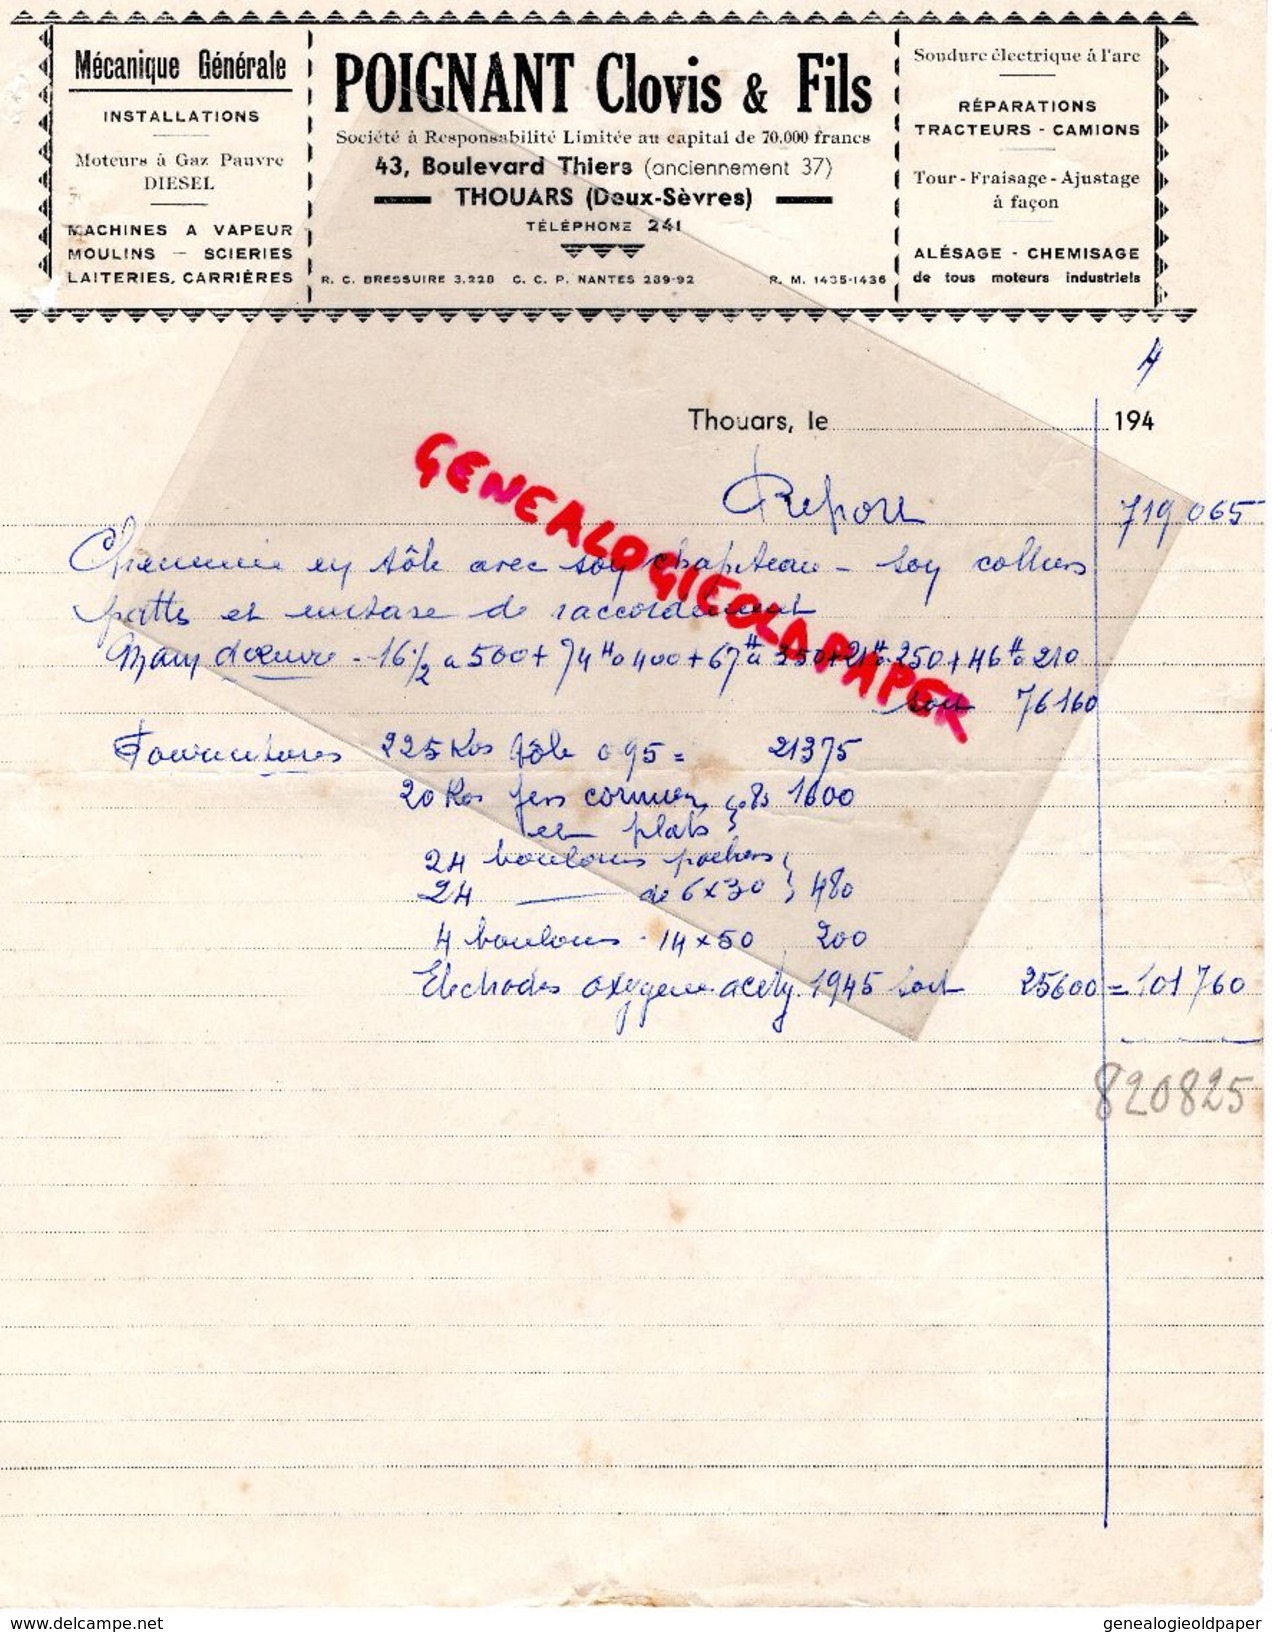 79 - THOUARS-FACTURE POIGNANT CLOVIS & FILS- MECANIQUE GENERALE-DIESEL-43 BD. THIERS- 1944 - Old Professions